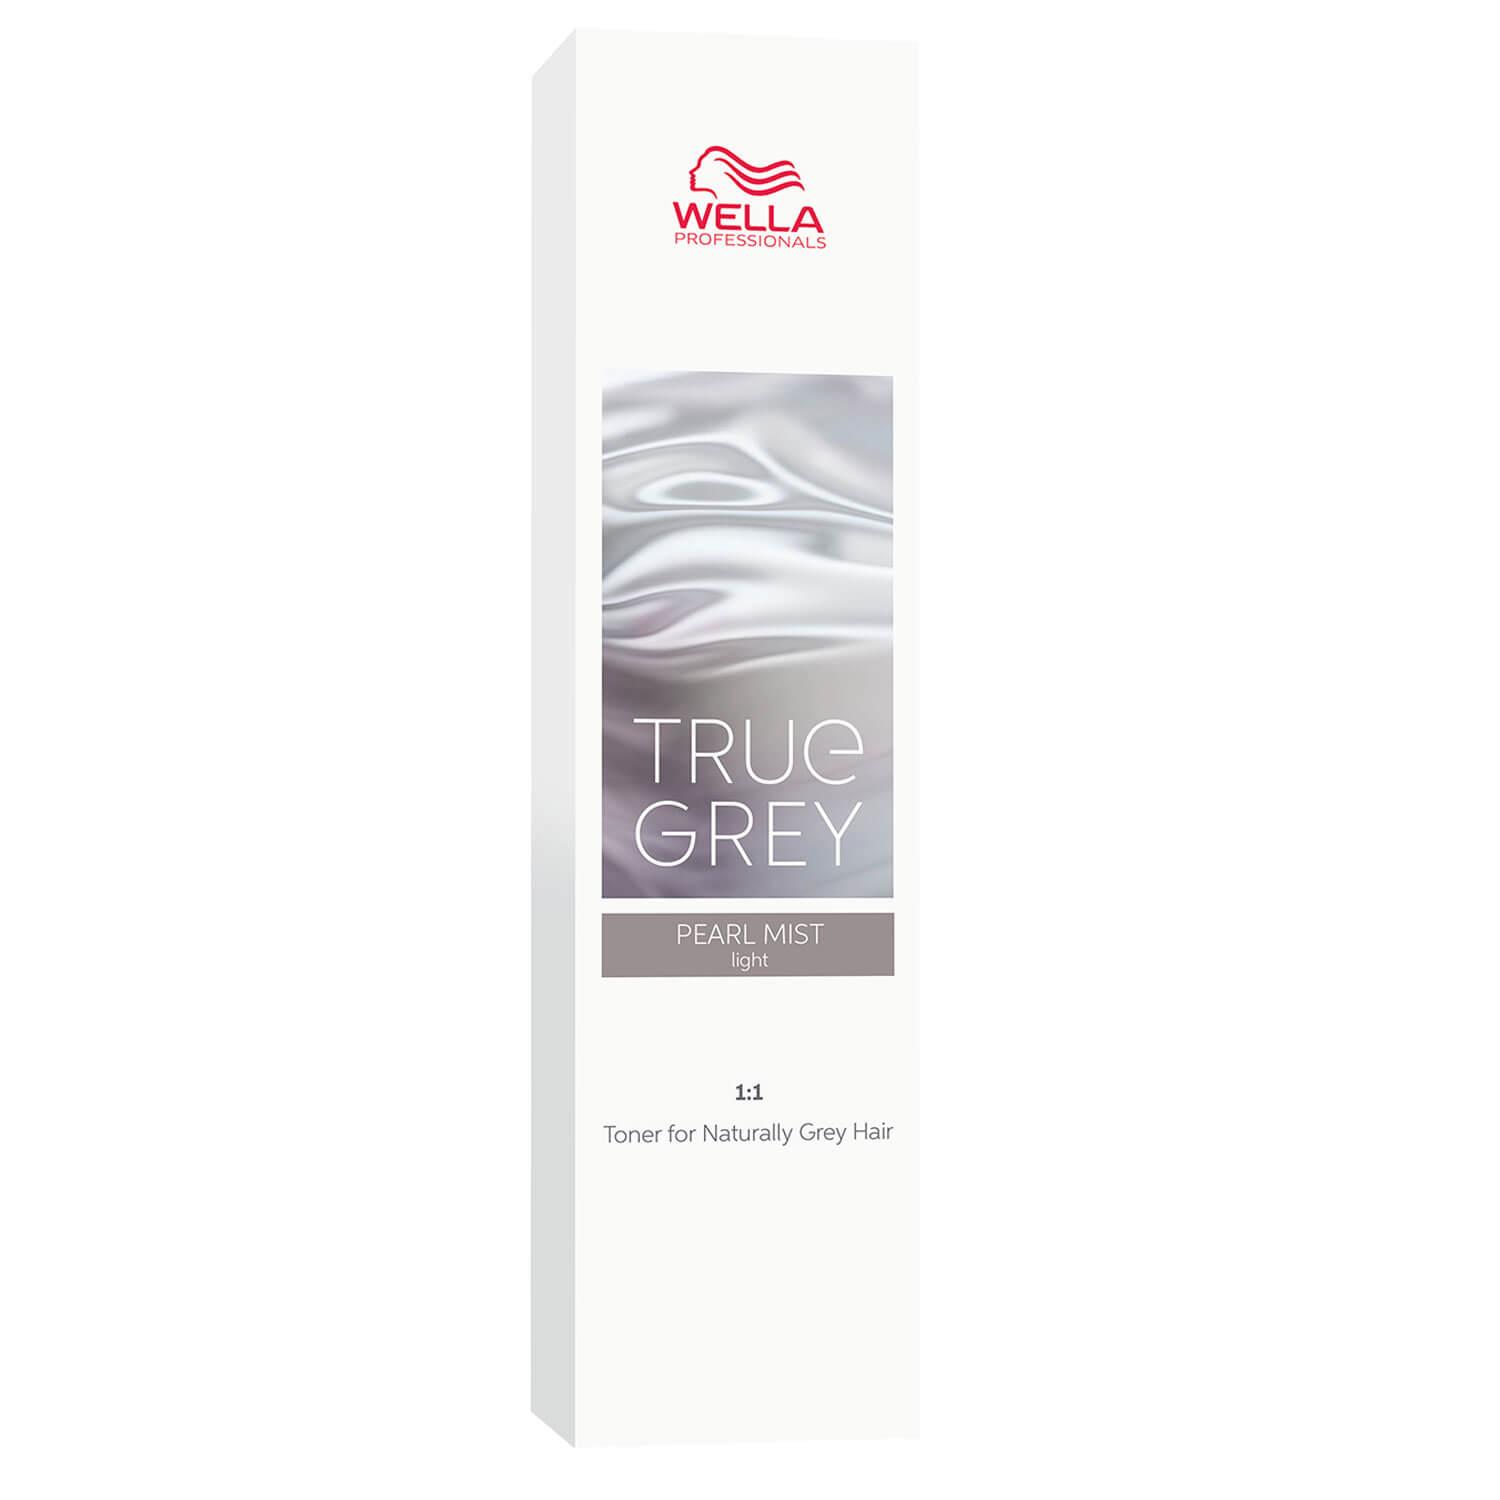 True Grey - Pearl Mist Light